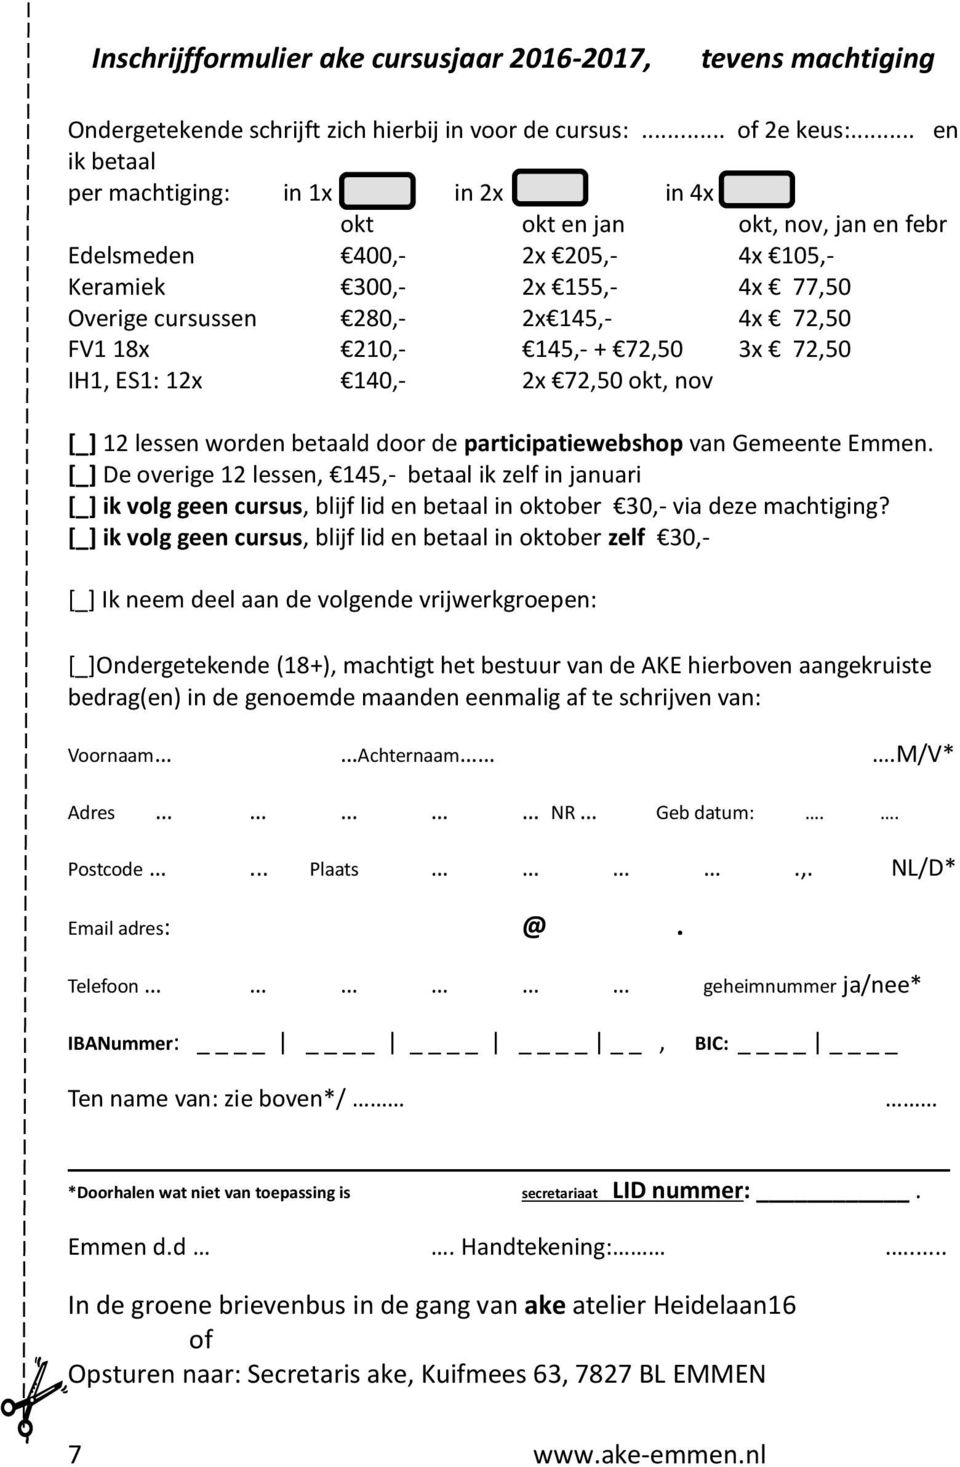 FV1 18x 210,- 145,- + 72,50 3x 72,50 IH1, ES1: 12x 140,- 2x 72,50 okt, nov [_] 12 lessen worden betaald door de participatiewebshop van Gemeente Emmen.